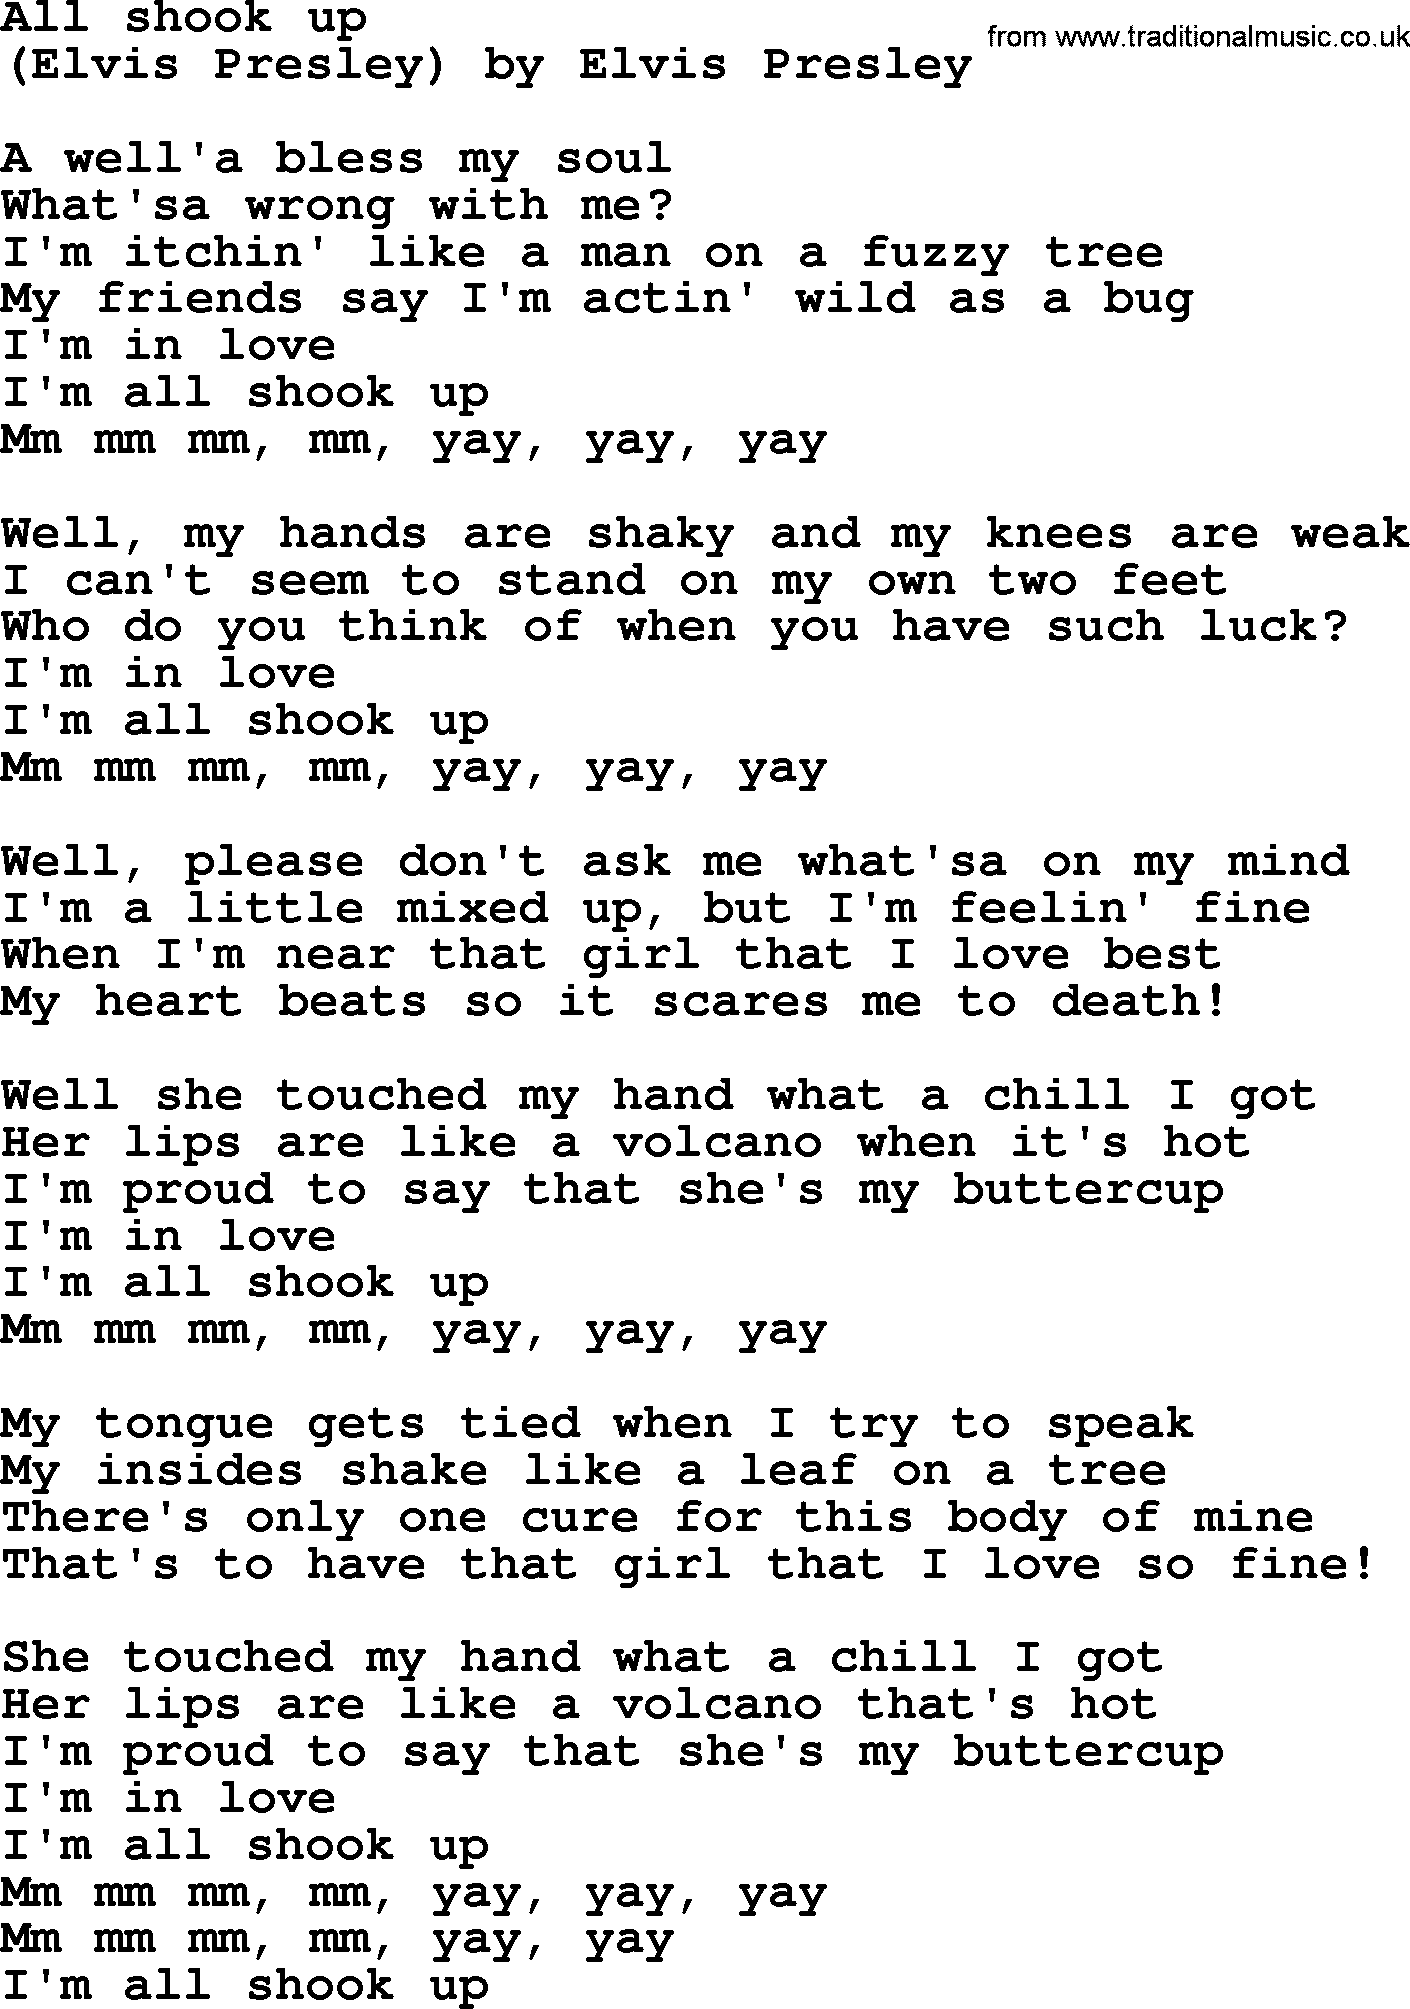 Bruce Springsteen song: All Shook Up lyrics